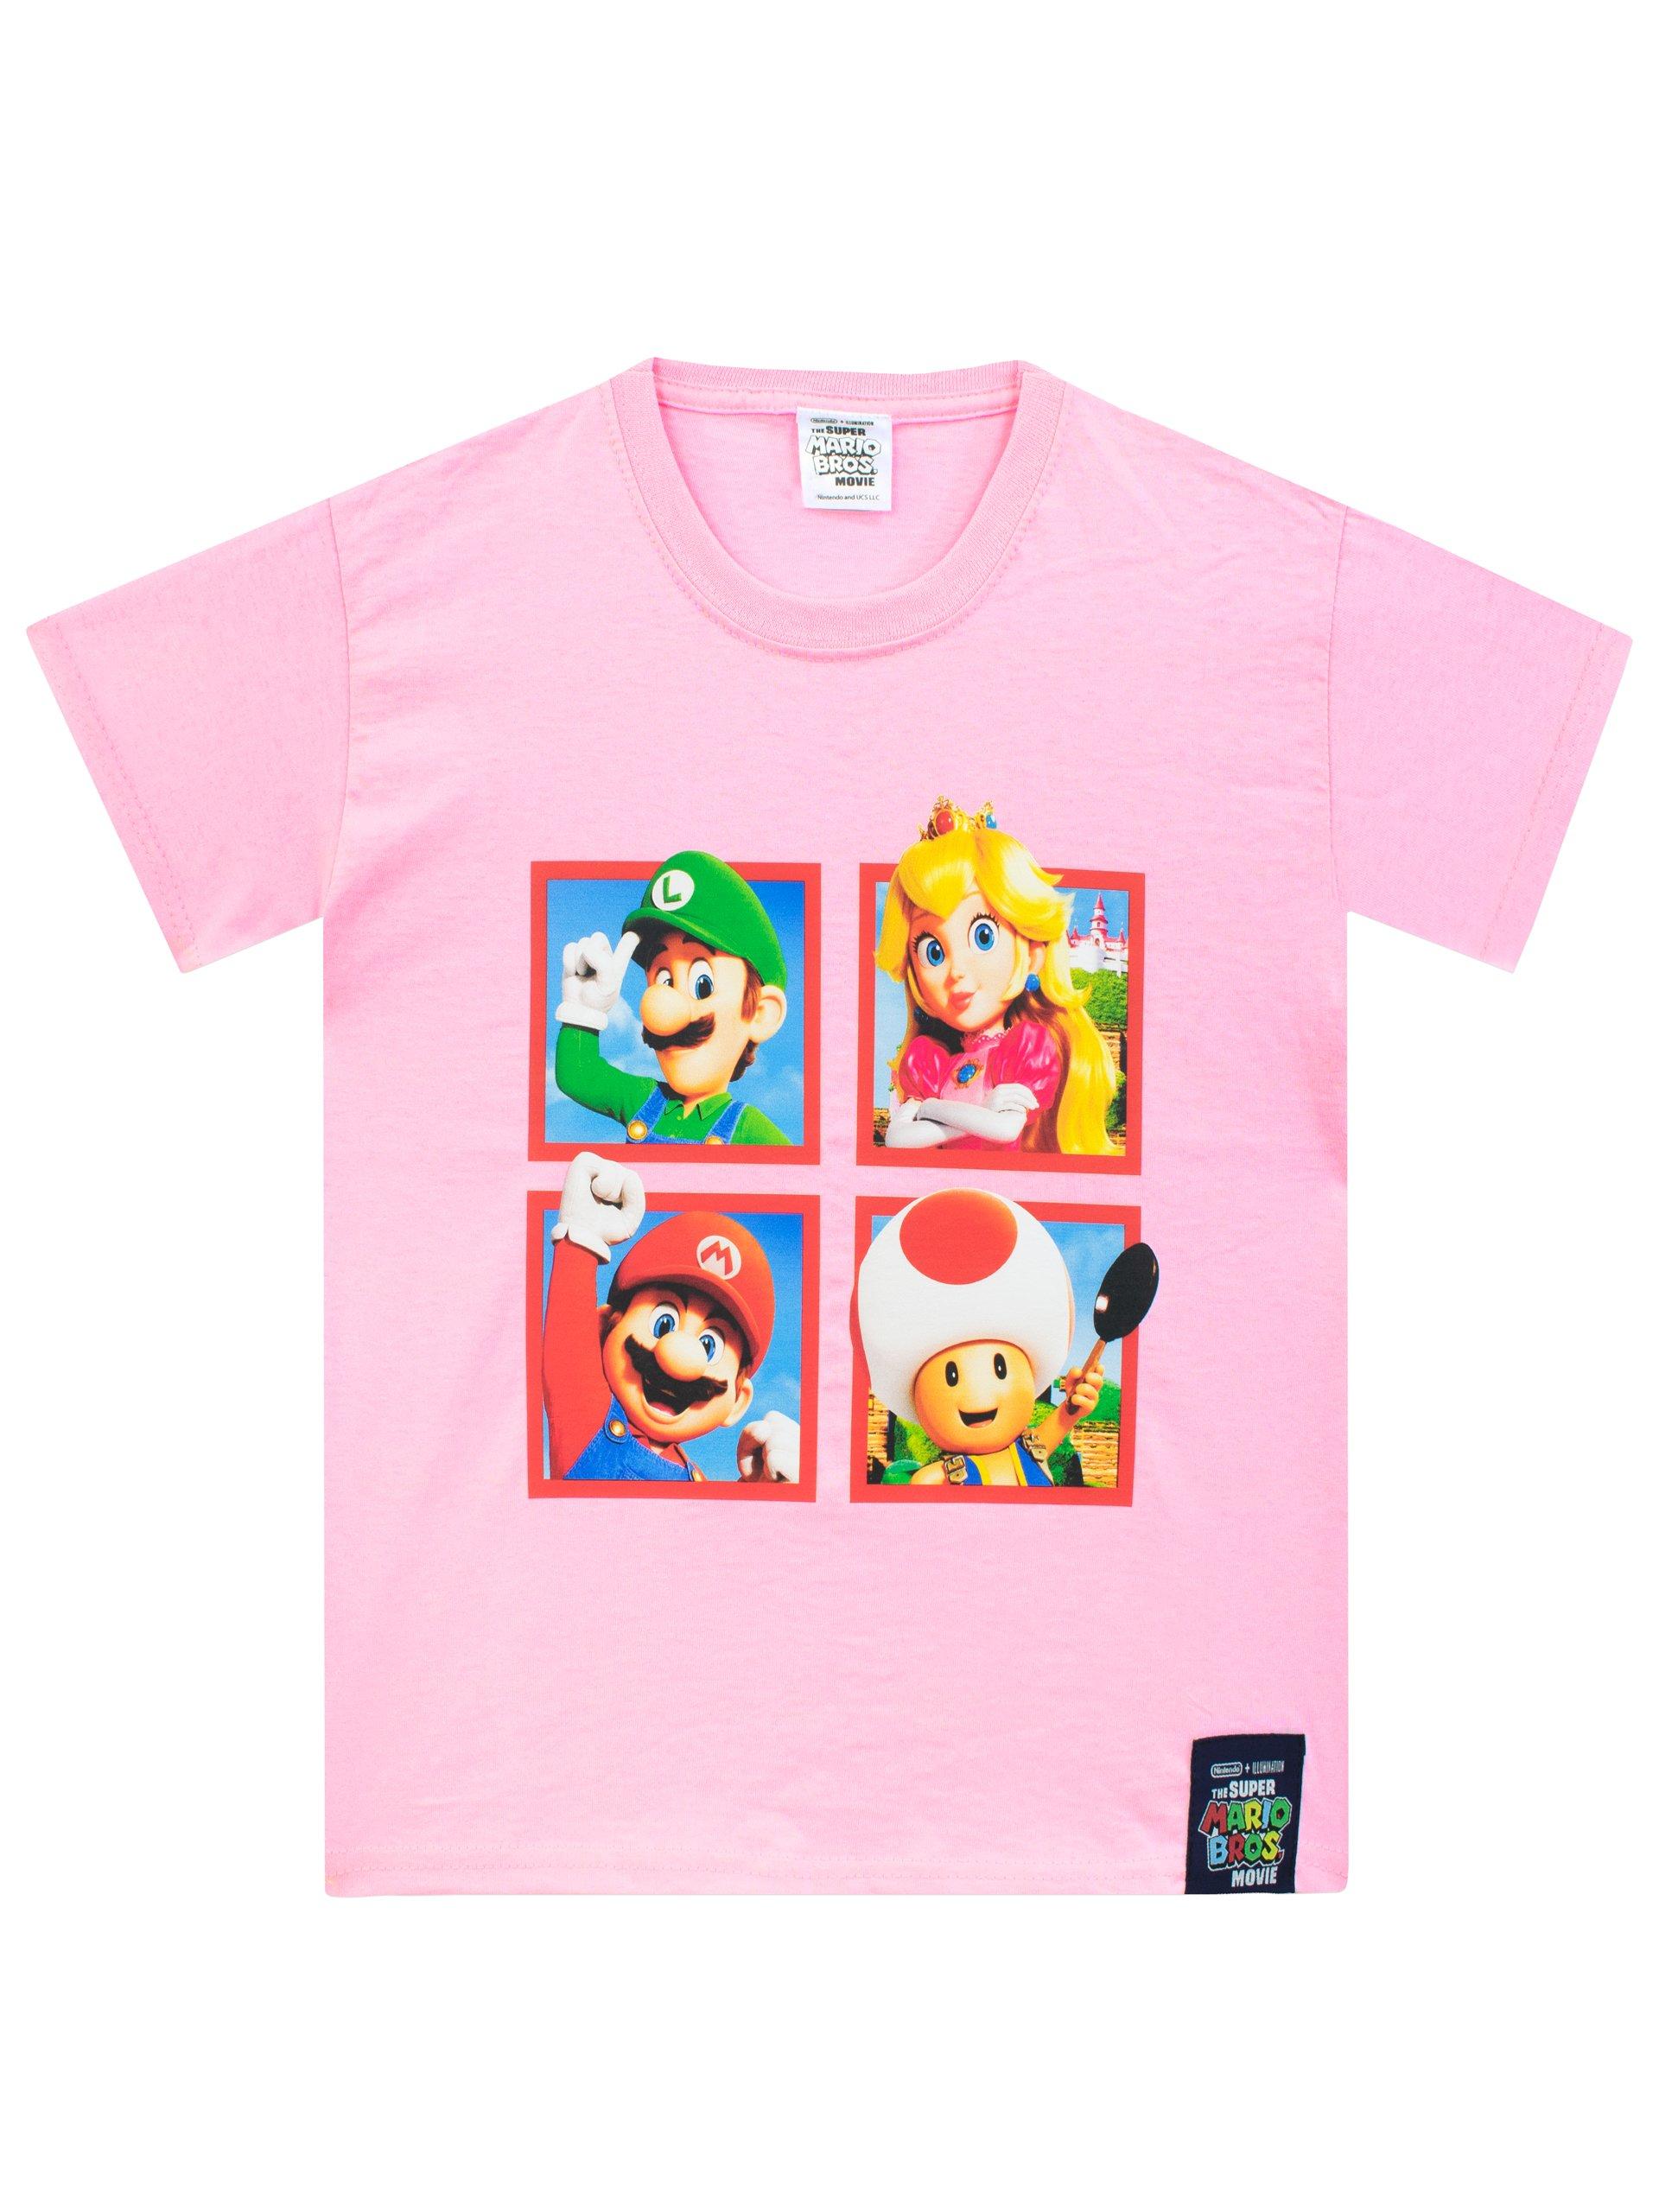 Princess Peach T-Shirt